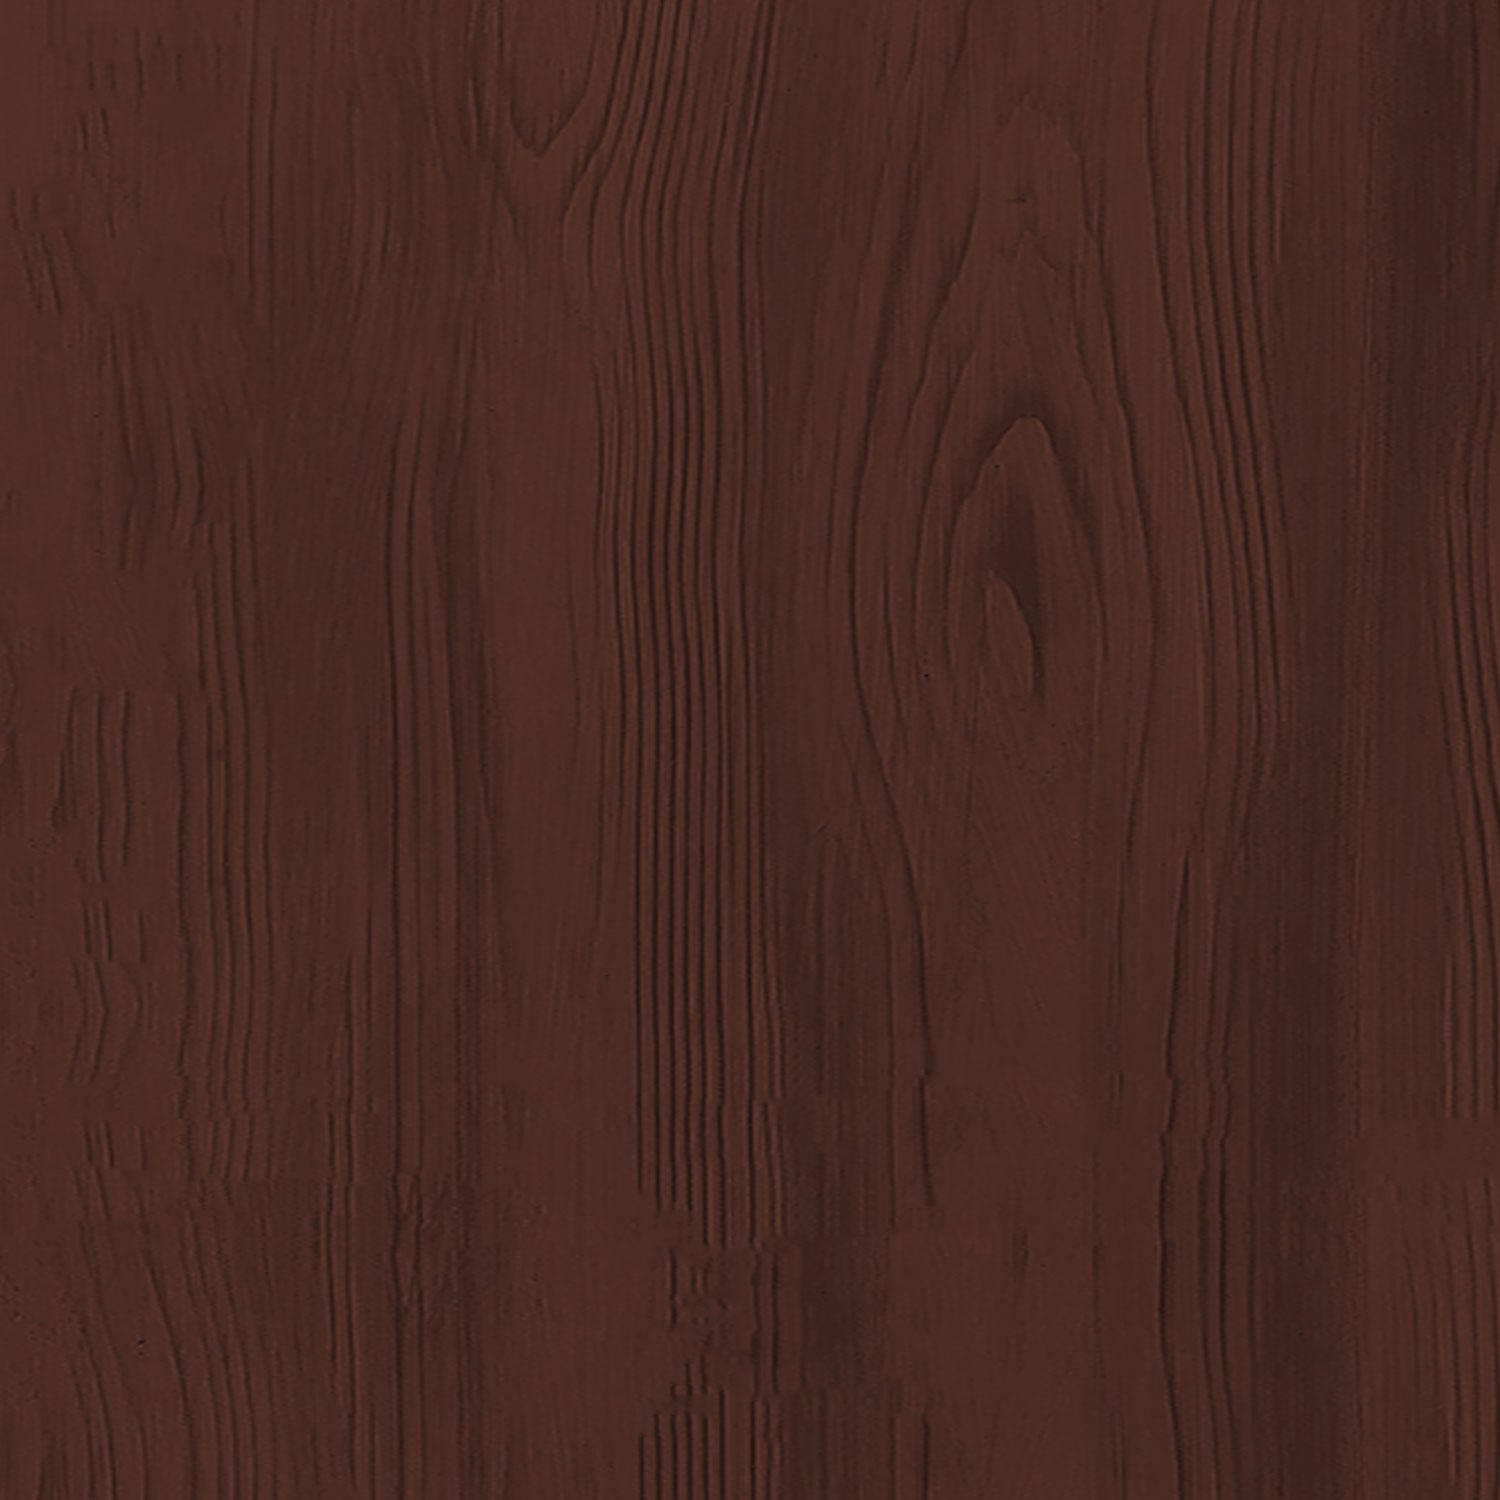 Multi-purpose Wood'n Kit - Red Mahogany - Exterior Top Coat